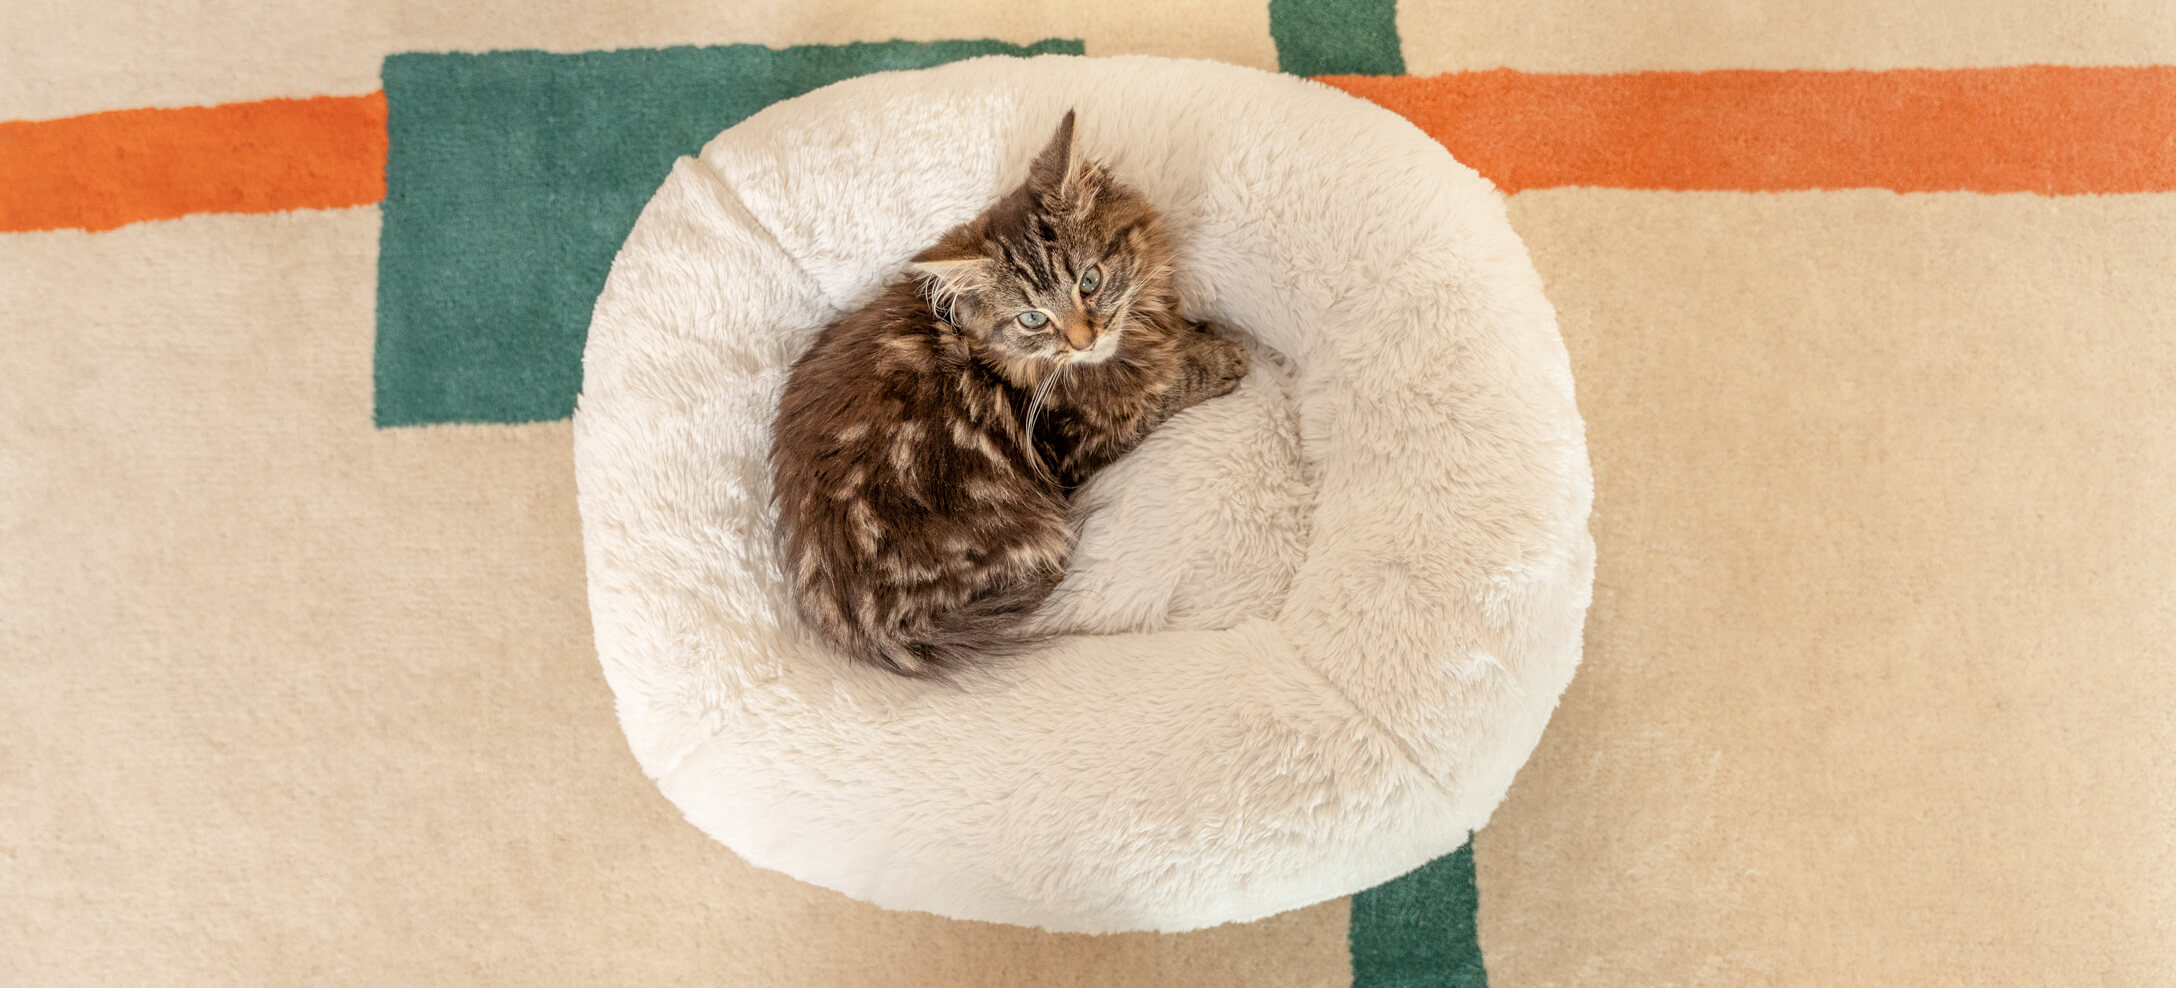 En katt är uppkrupen på Maya Donut kattbädd från Omlet